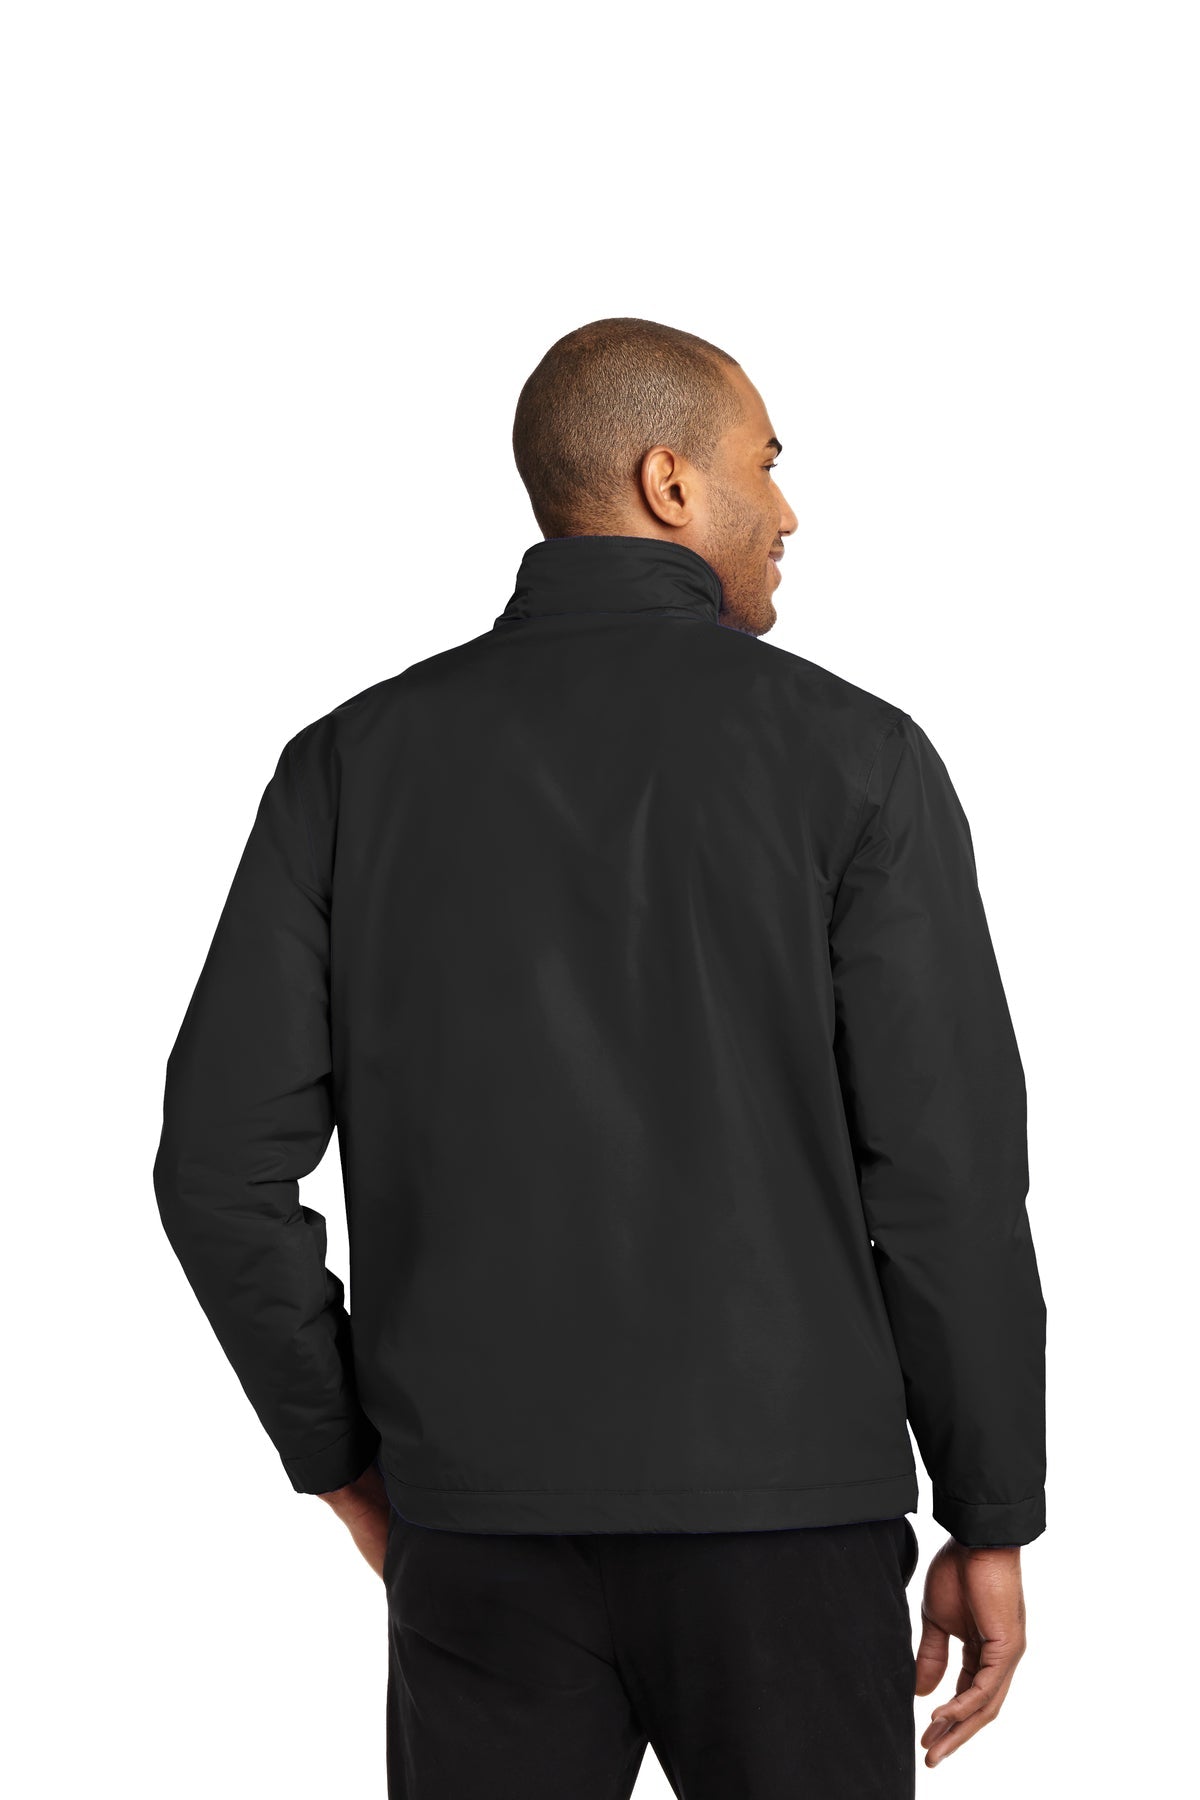 port authority_j354 _true black/true black_company_logo_jackets